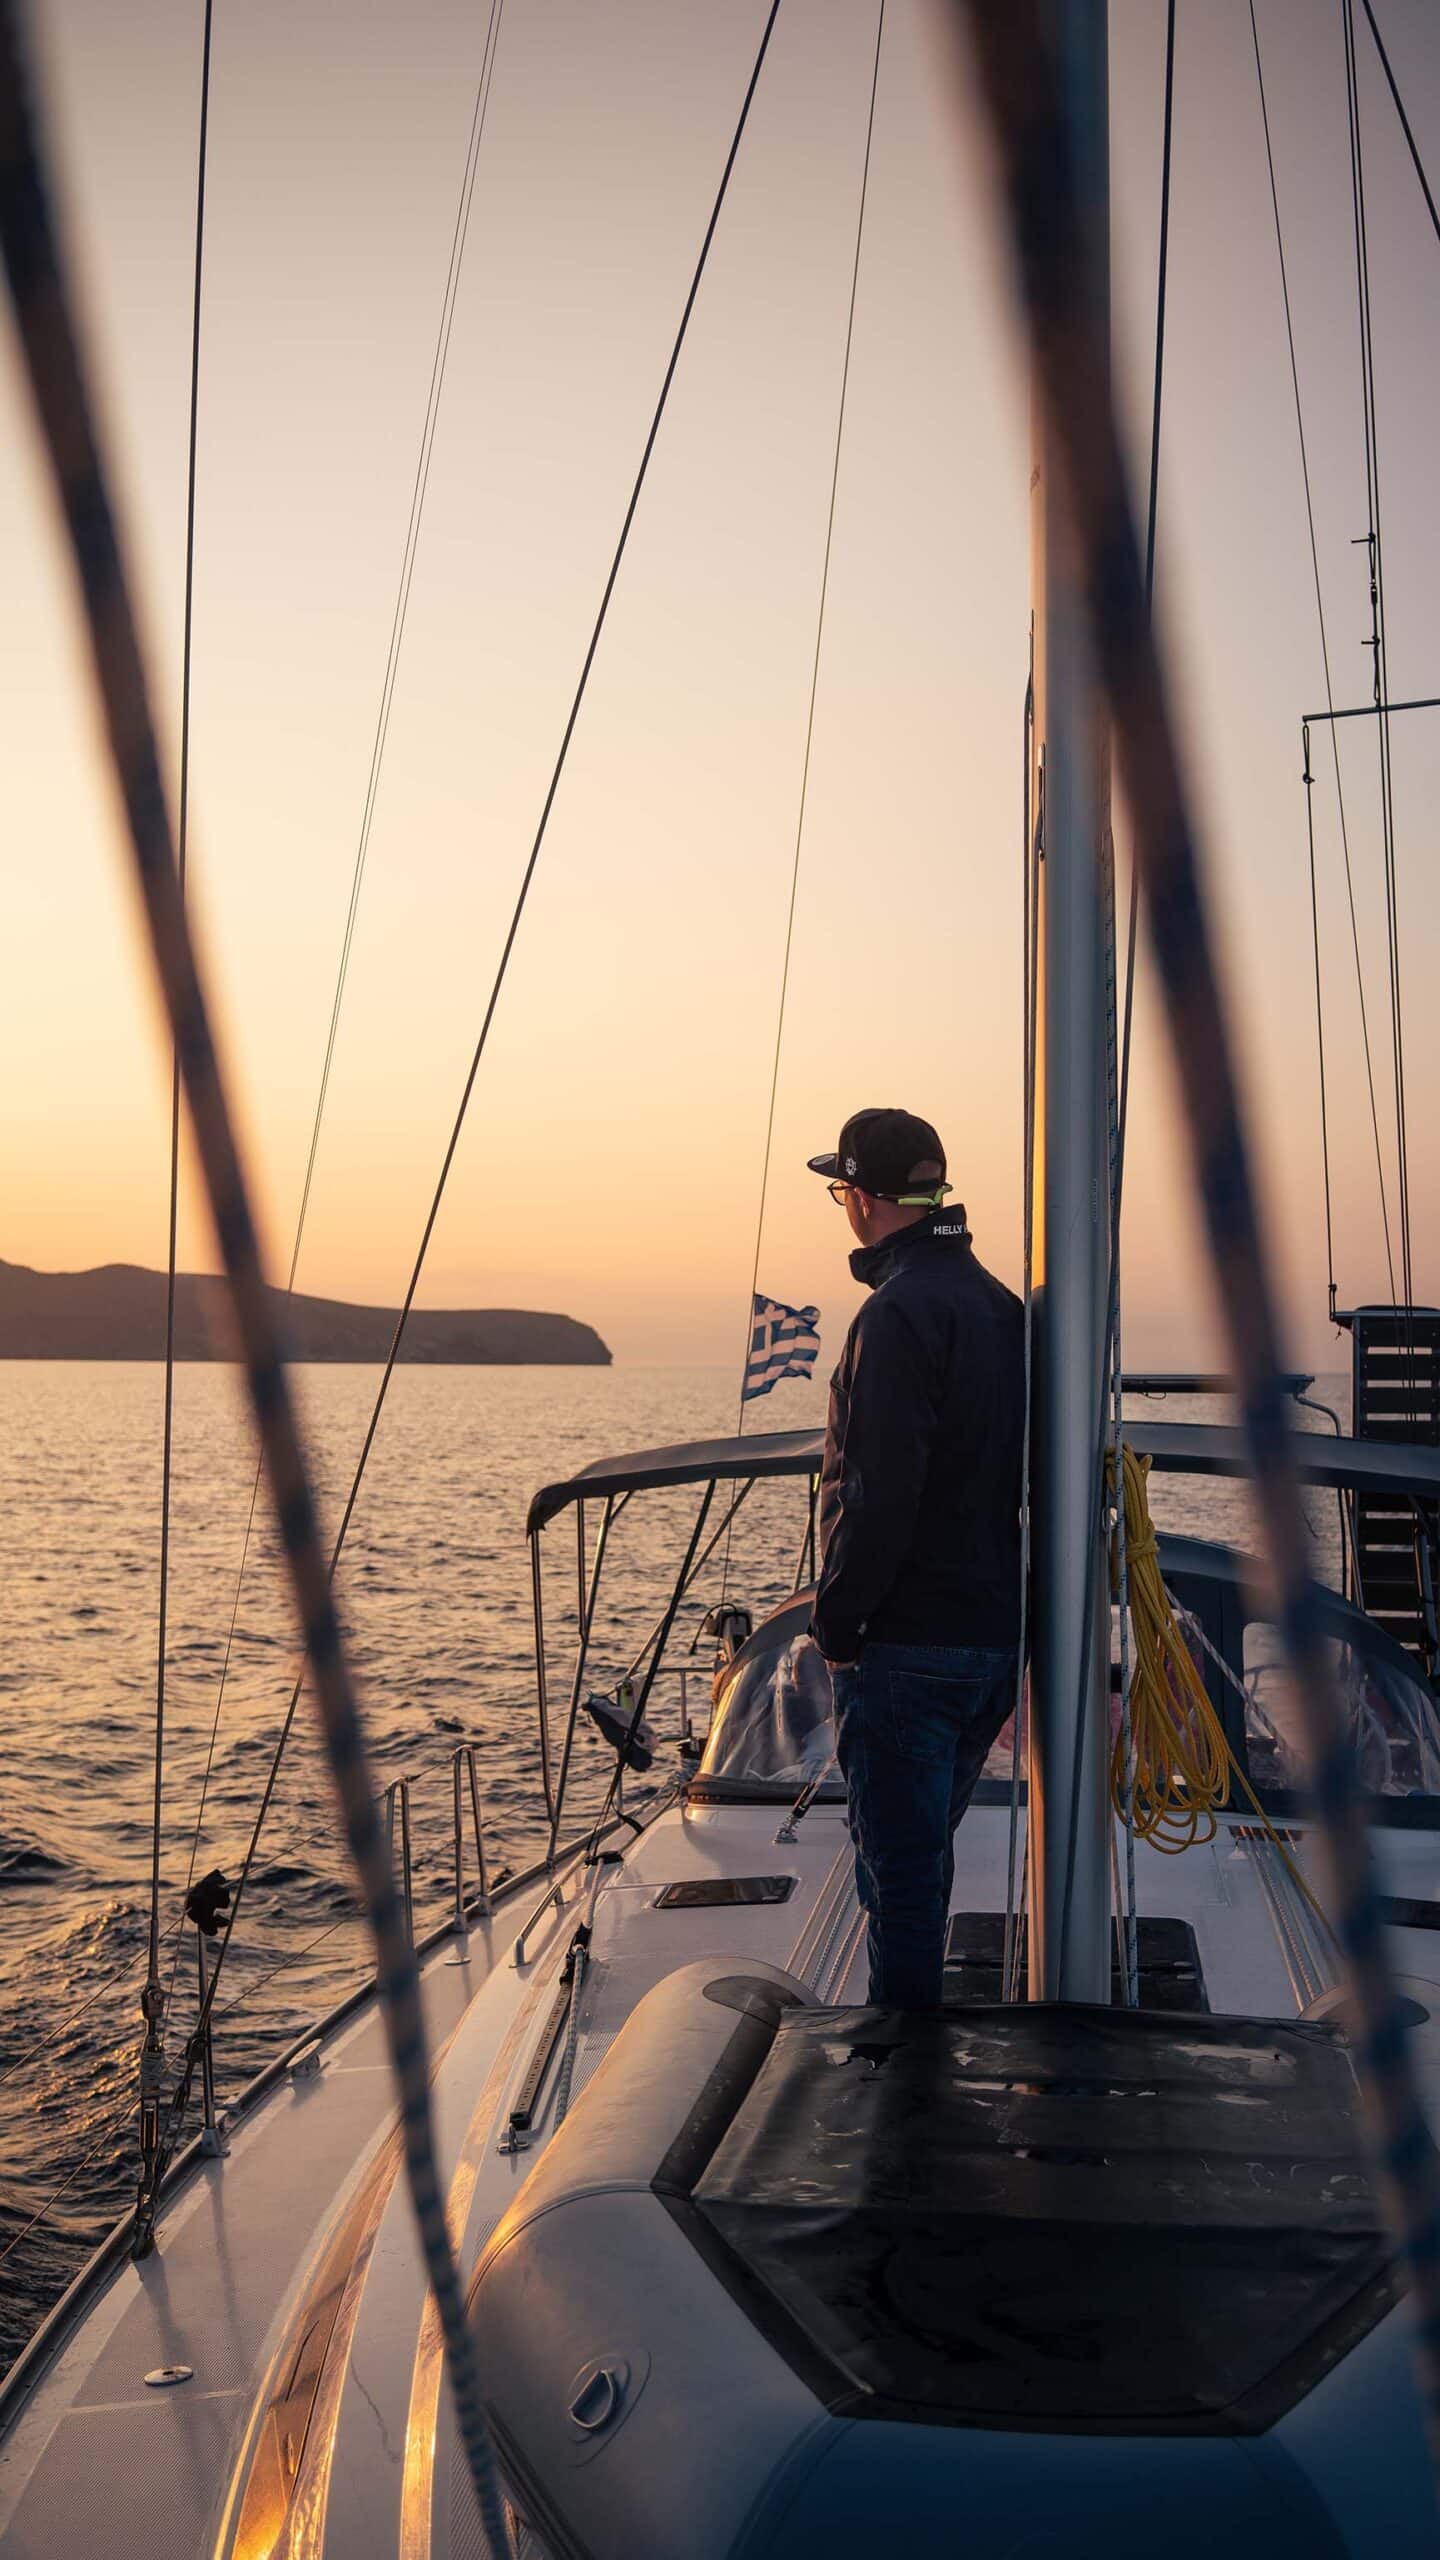 Eine Person steht bei Sonnenuntergang auf dem Deck eines Segelboots, genießt ihren Segeltörn und blickt zum Horizont. Im Vordergrund sind die Takelage und Seile des Segelboots zu sehen, im Hintergrund ist eine Insel über einem ruhigen Meer zu sehen. Die warmen Farben der untergehenden Sonne tauchen diese idyllische Segelurlaubsszene in einen ruhigen Schein.